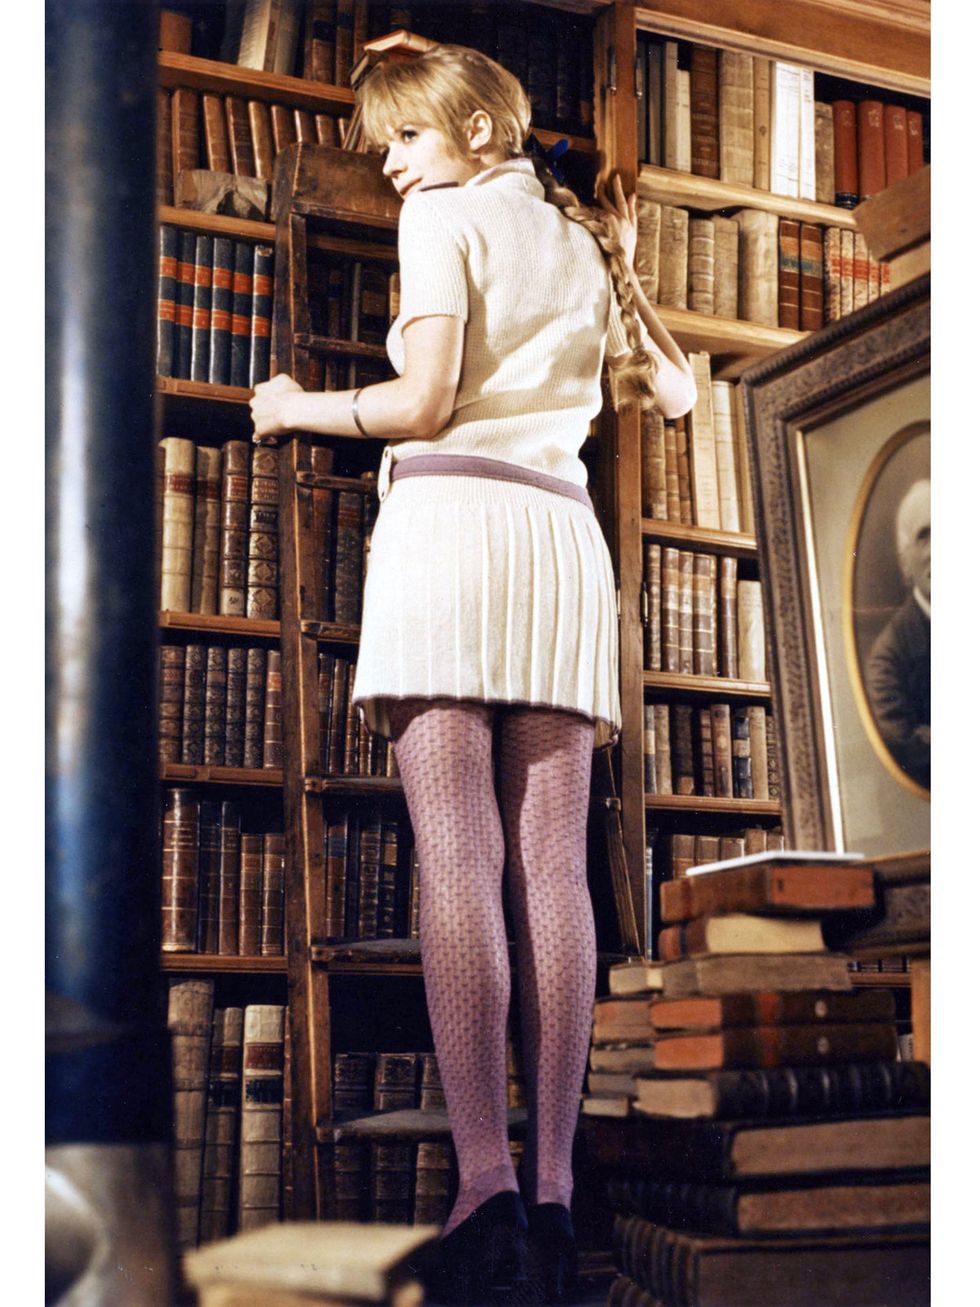 Human leg, Shelf, Shelving, Knee, Bookcase, Waist, Publication, Blond, Calf, Book, 